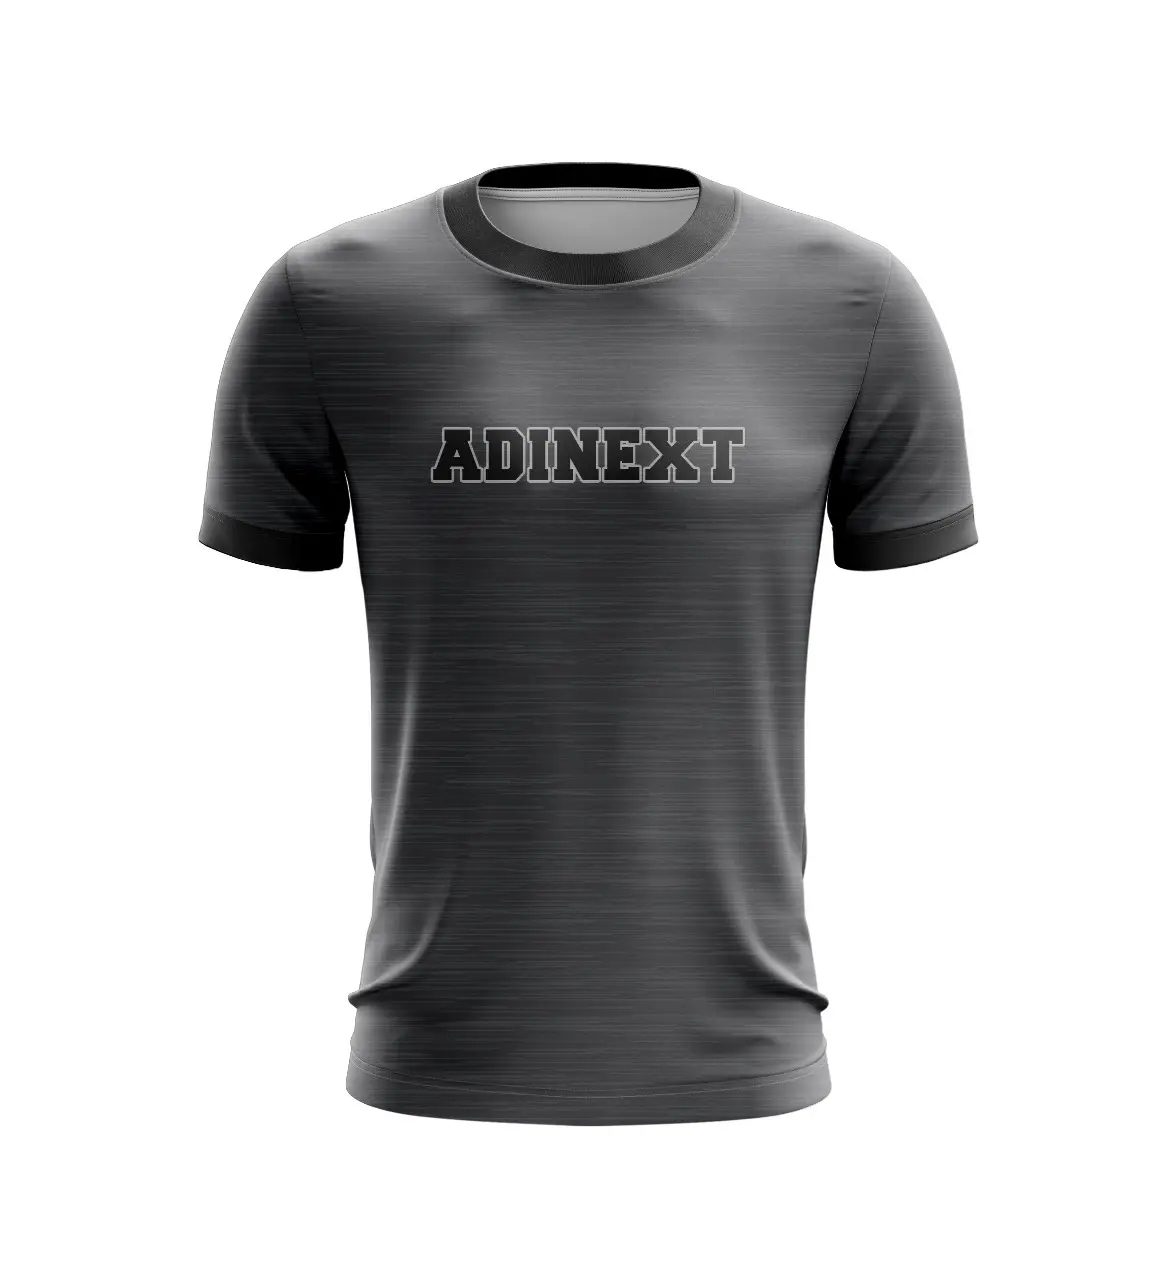 Adinext jersey sportivo da uomo maglietta traspirante da allenamento all'aperto camicia a maniche corte sublimazione nome e logo personalizzati